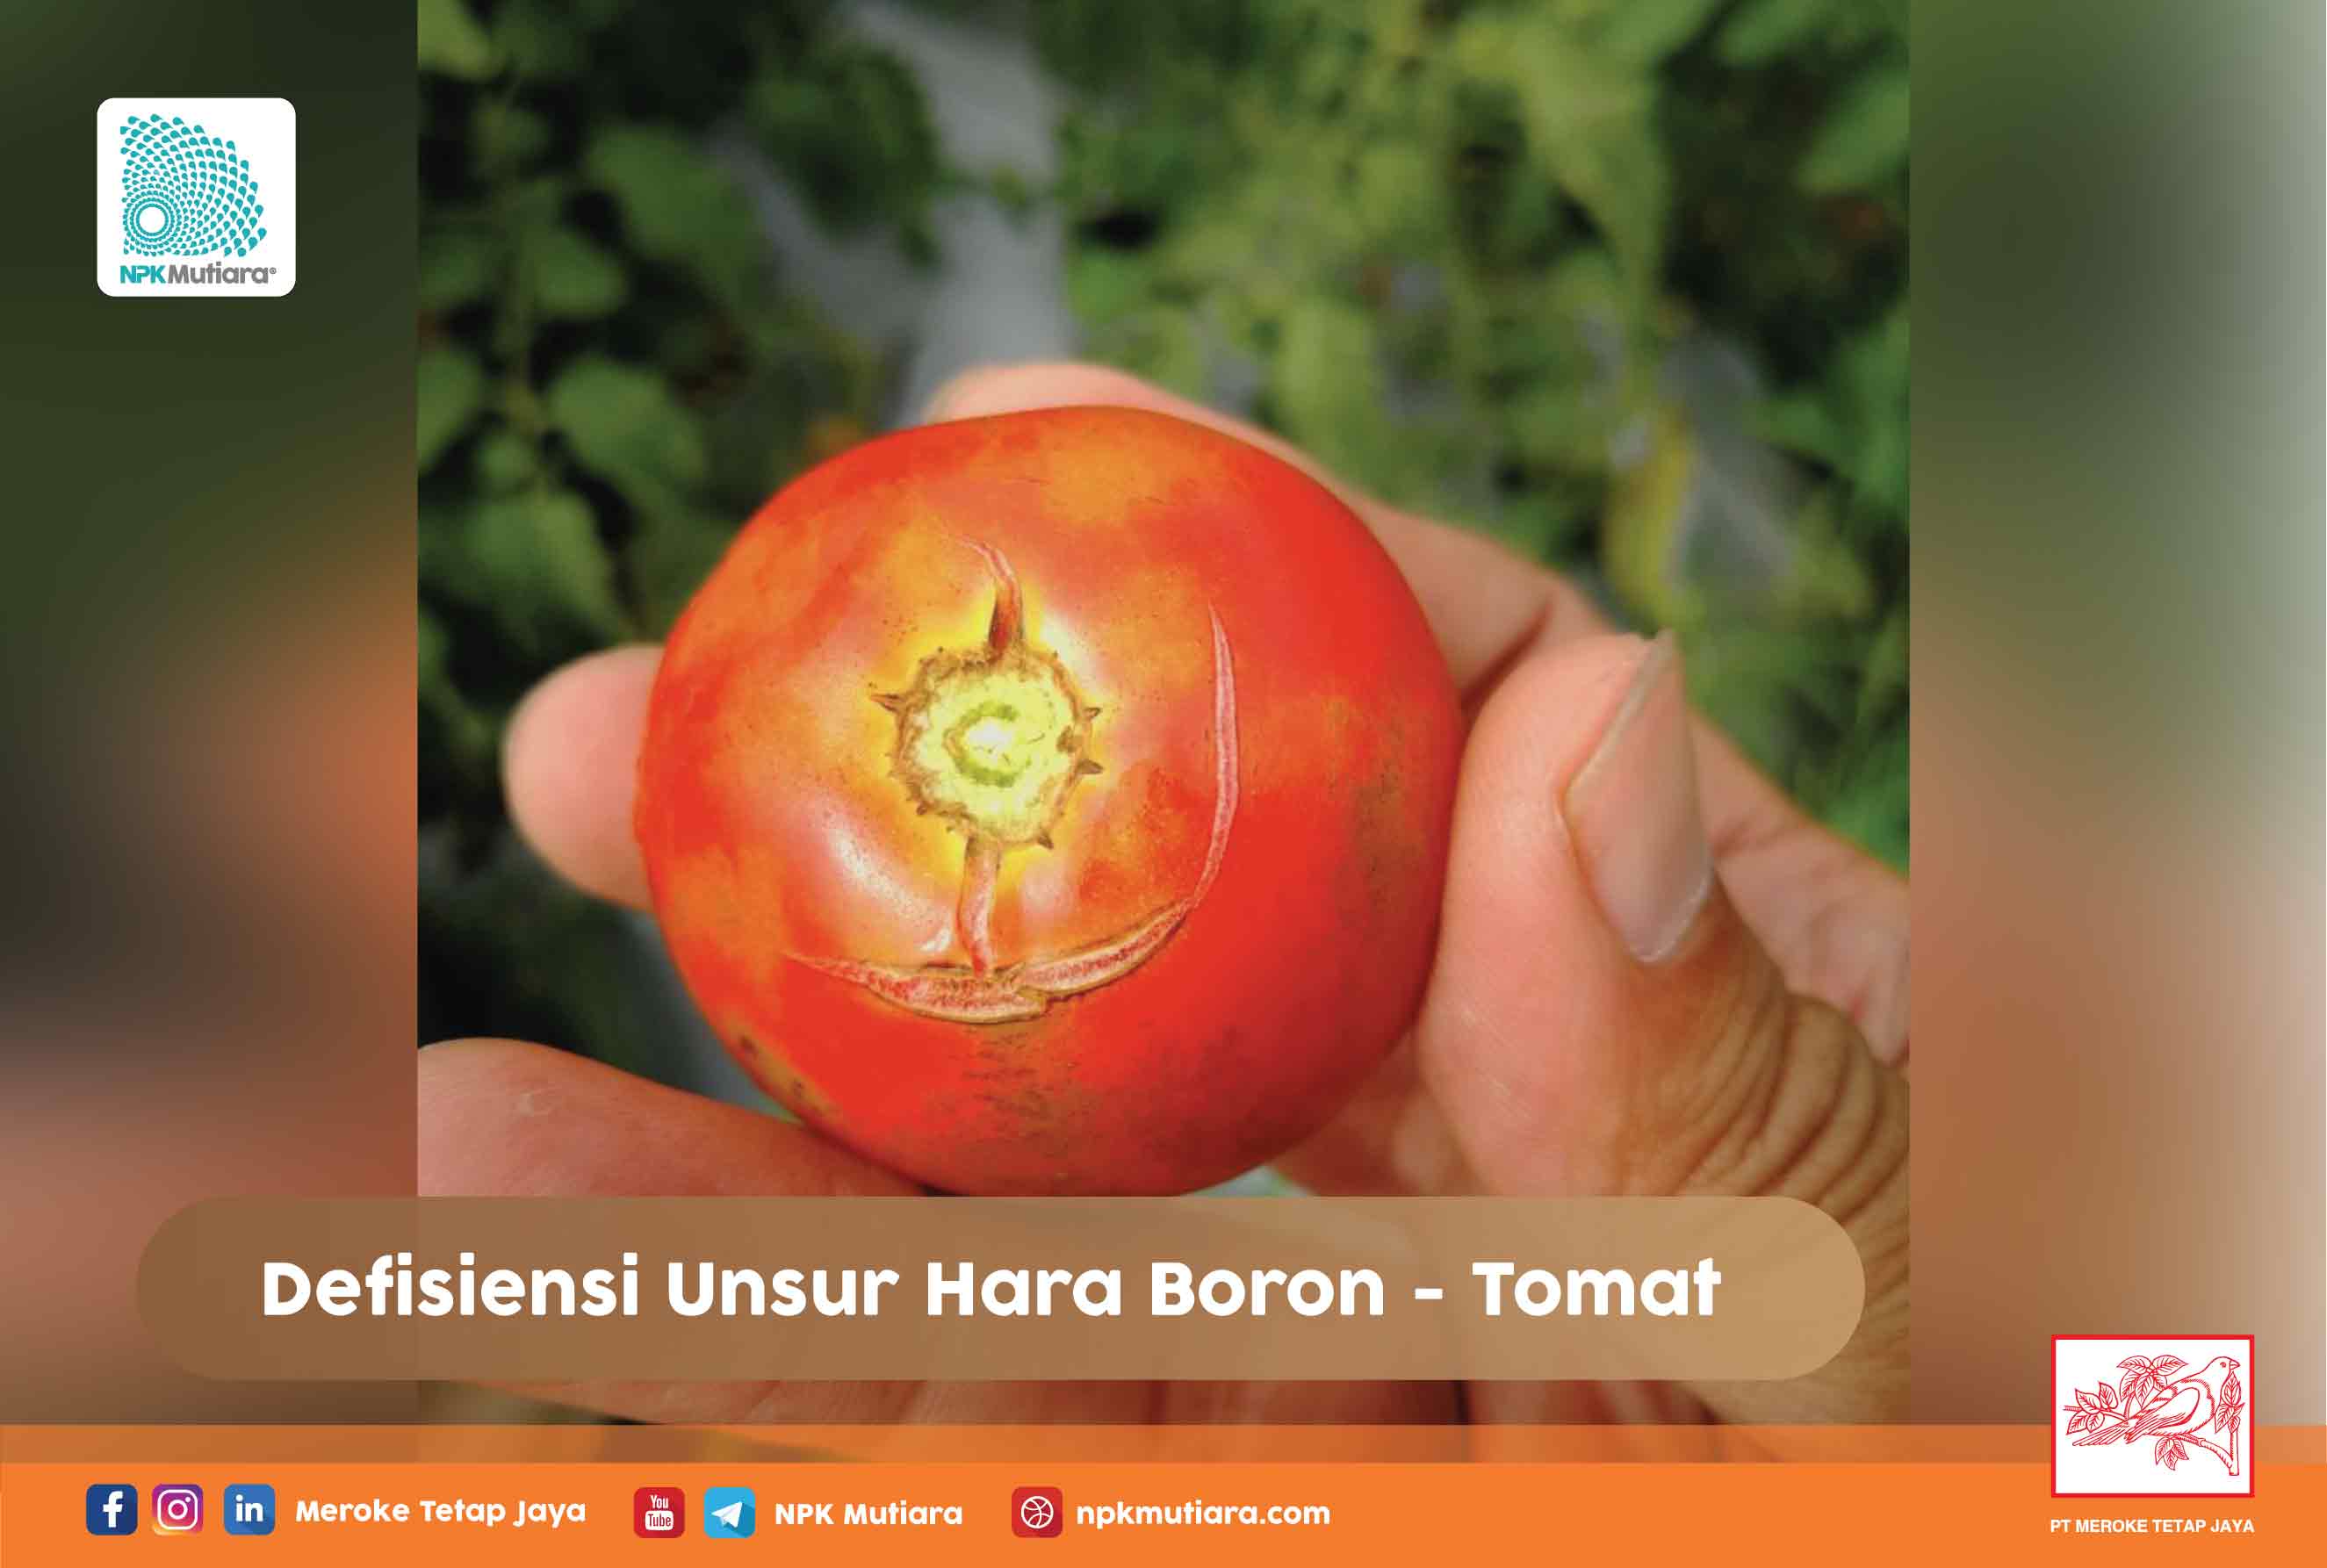 Defisiensi Unsur Hara Boron pada Tomat